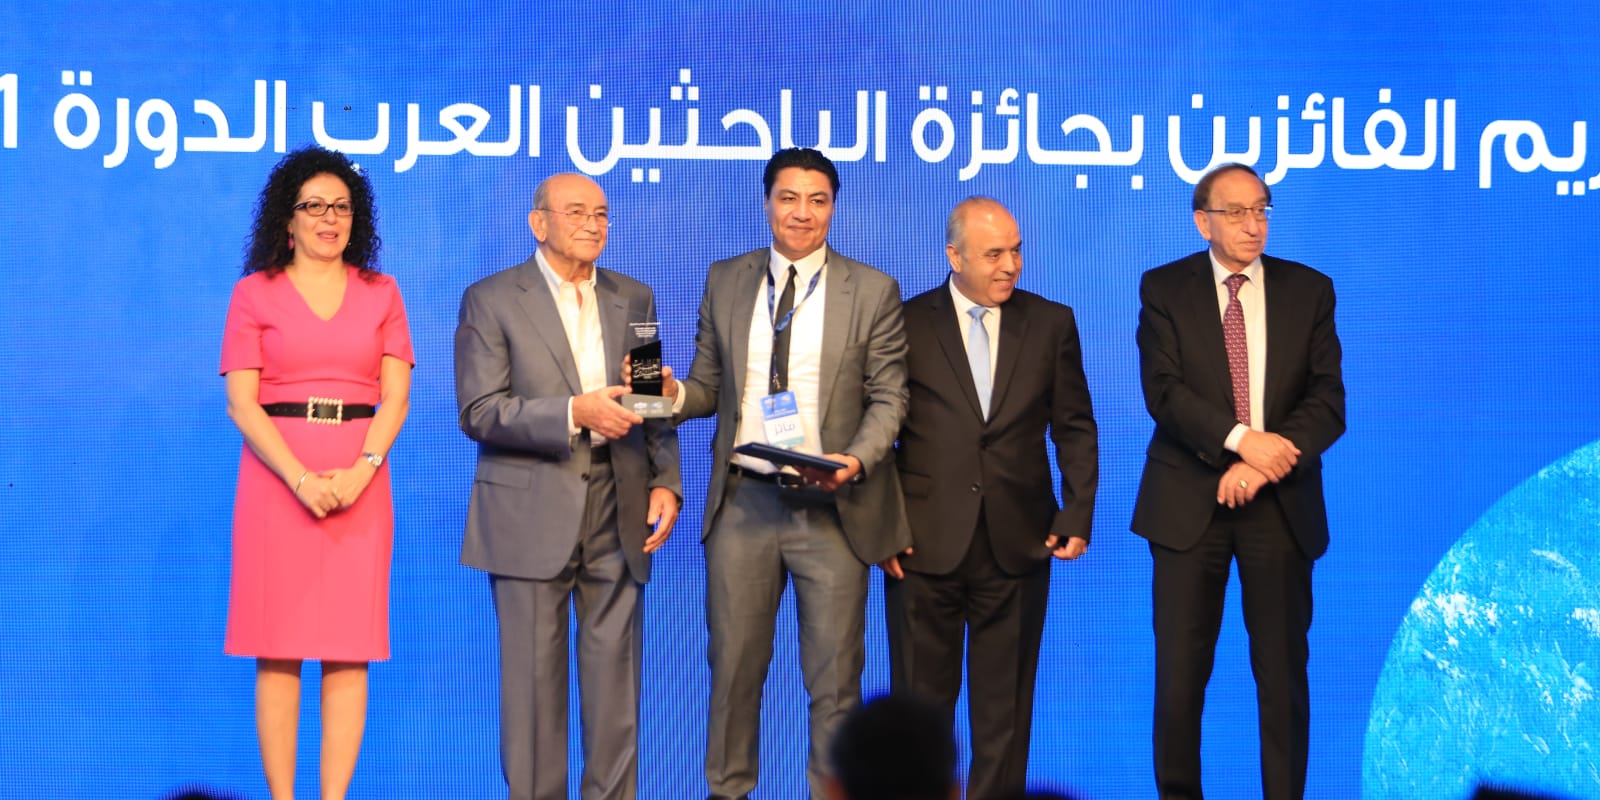 فوز عطا جبريل أستاذ اللغويات التطبيقية بجائزة "عبدالحميد شومان للباحثين العرب"